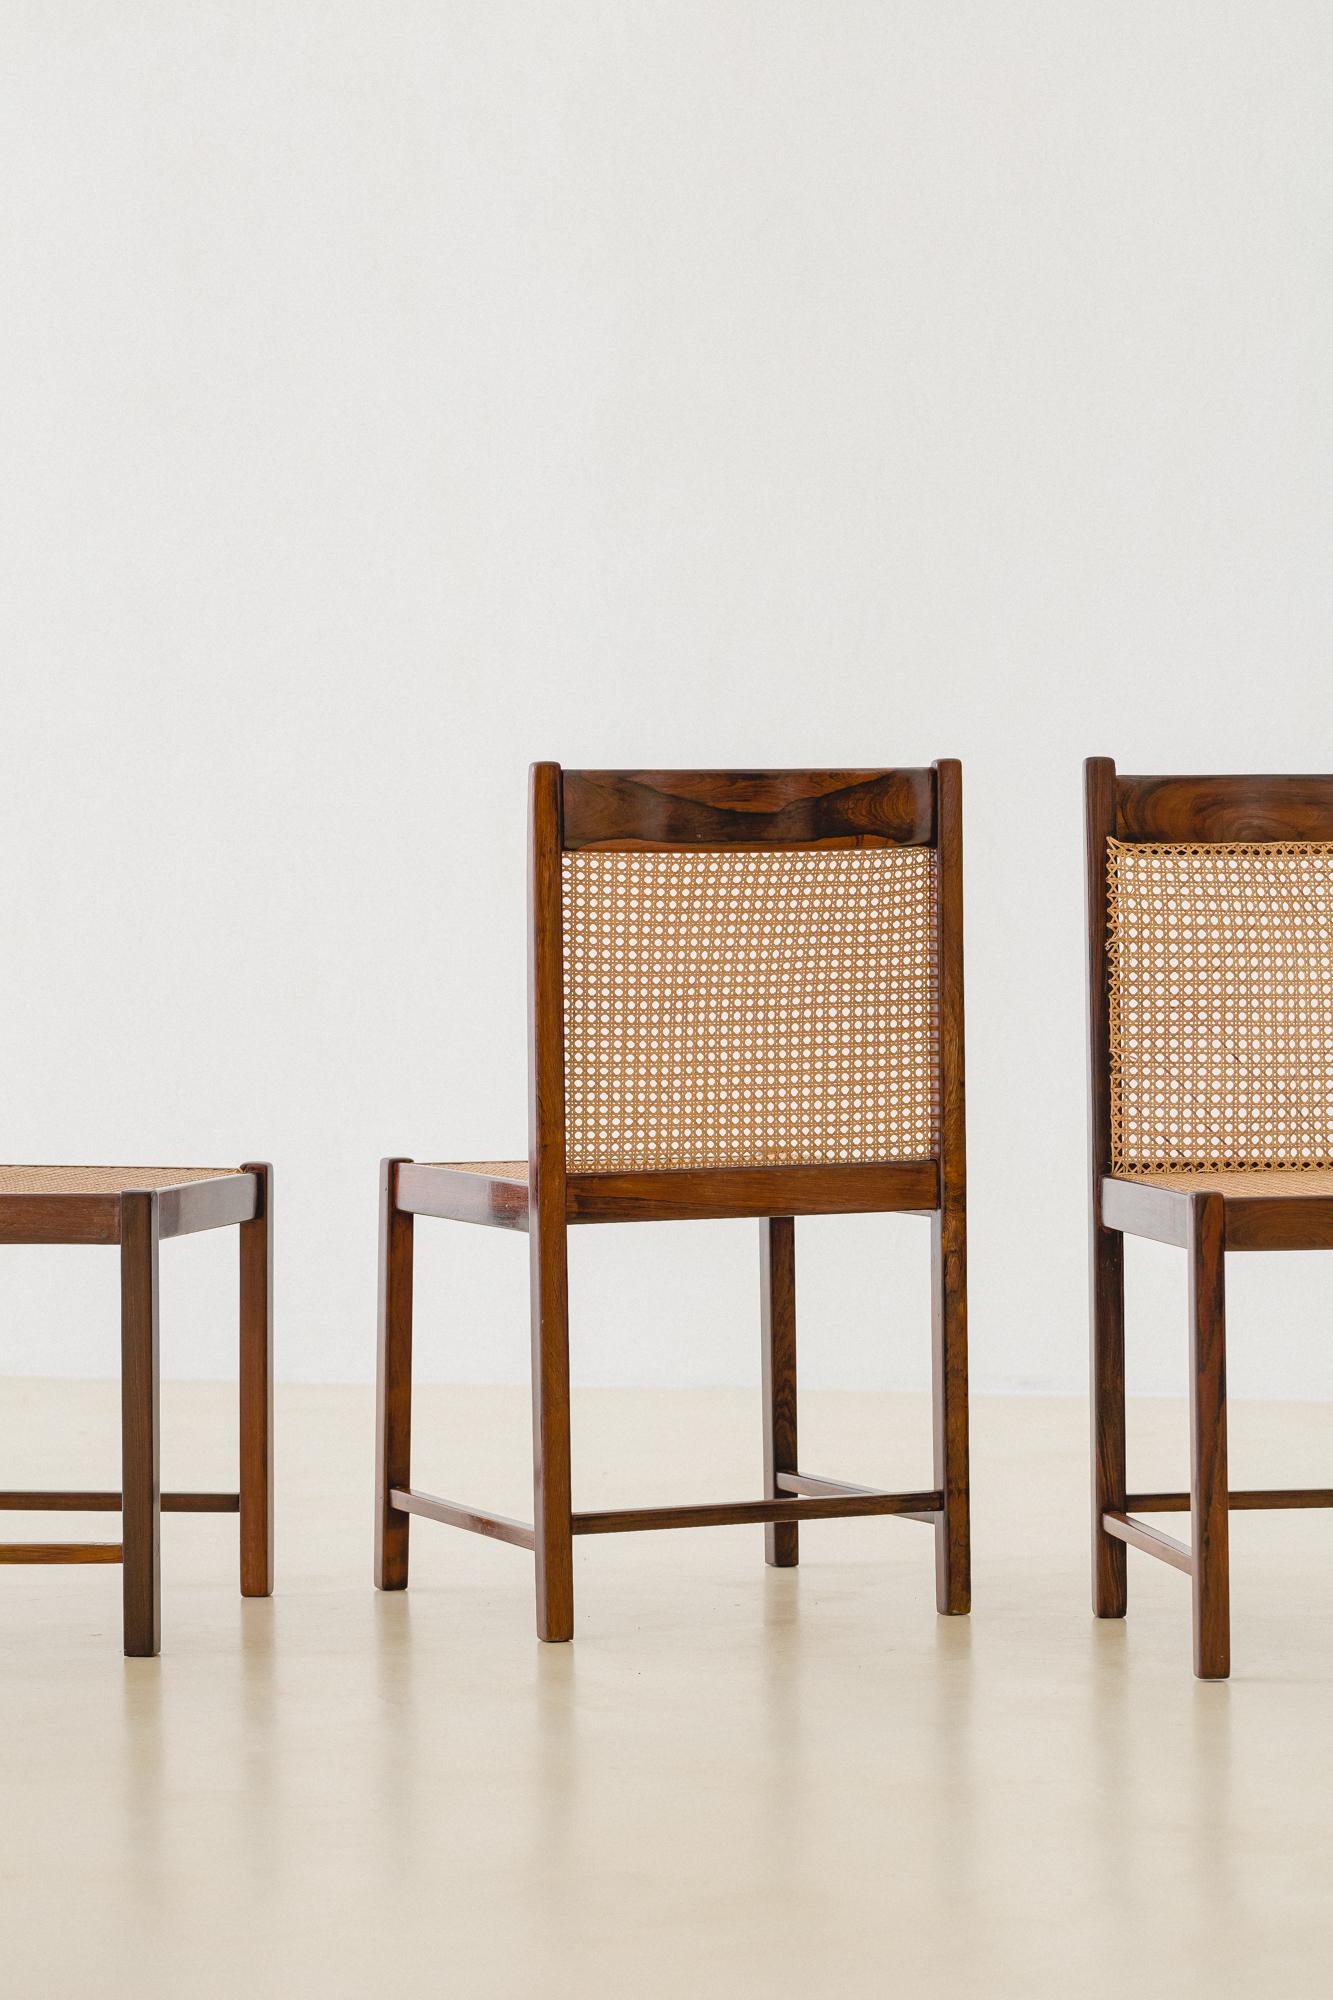 Cet ensemble de six chaises en bois de rose a été fabriqué par Fatima Arquitetura Interiores (FAI) dans les années 1960.

Ces pièces ont attiré notre attention pour de nombreuses raisons de design. Tout d'abord, la combinaison entre le siège et le